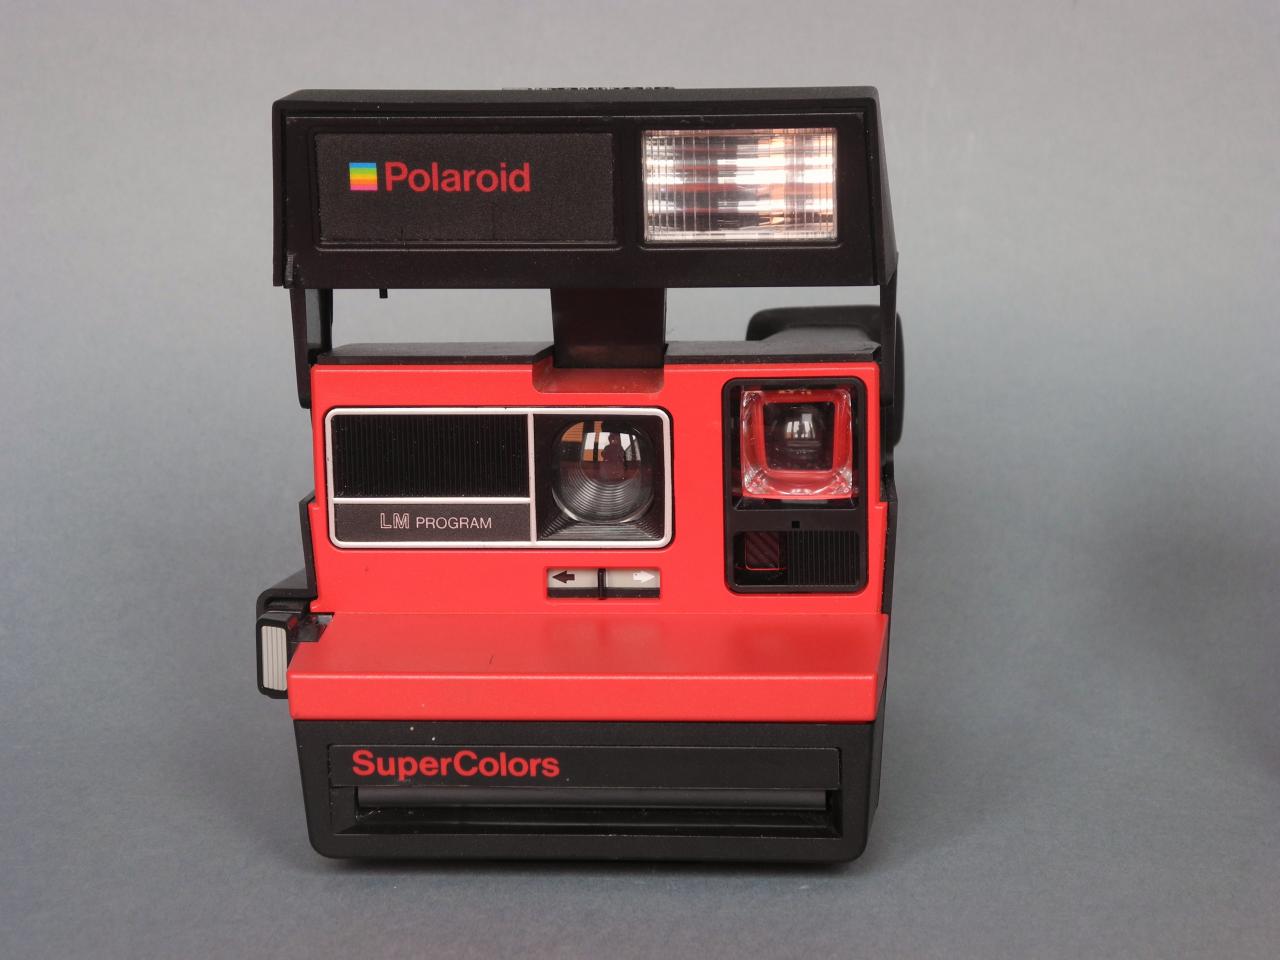 *Polaroid Supercolors film600 In The United Kingdom*